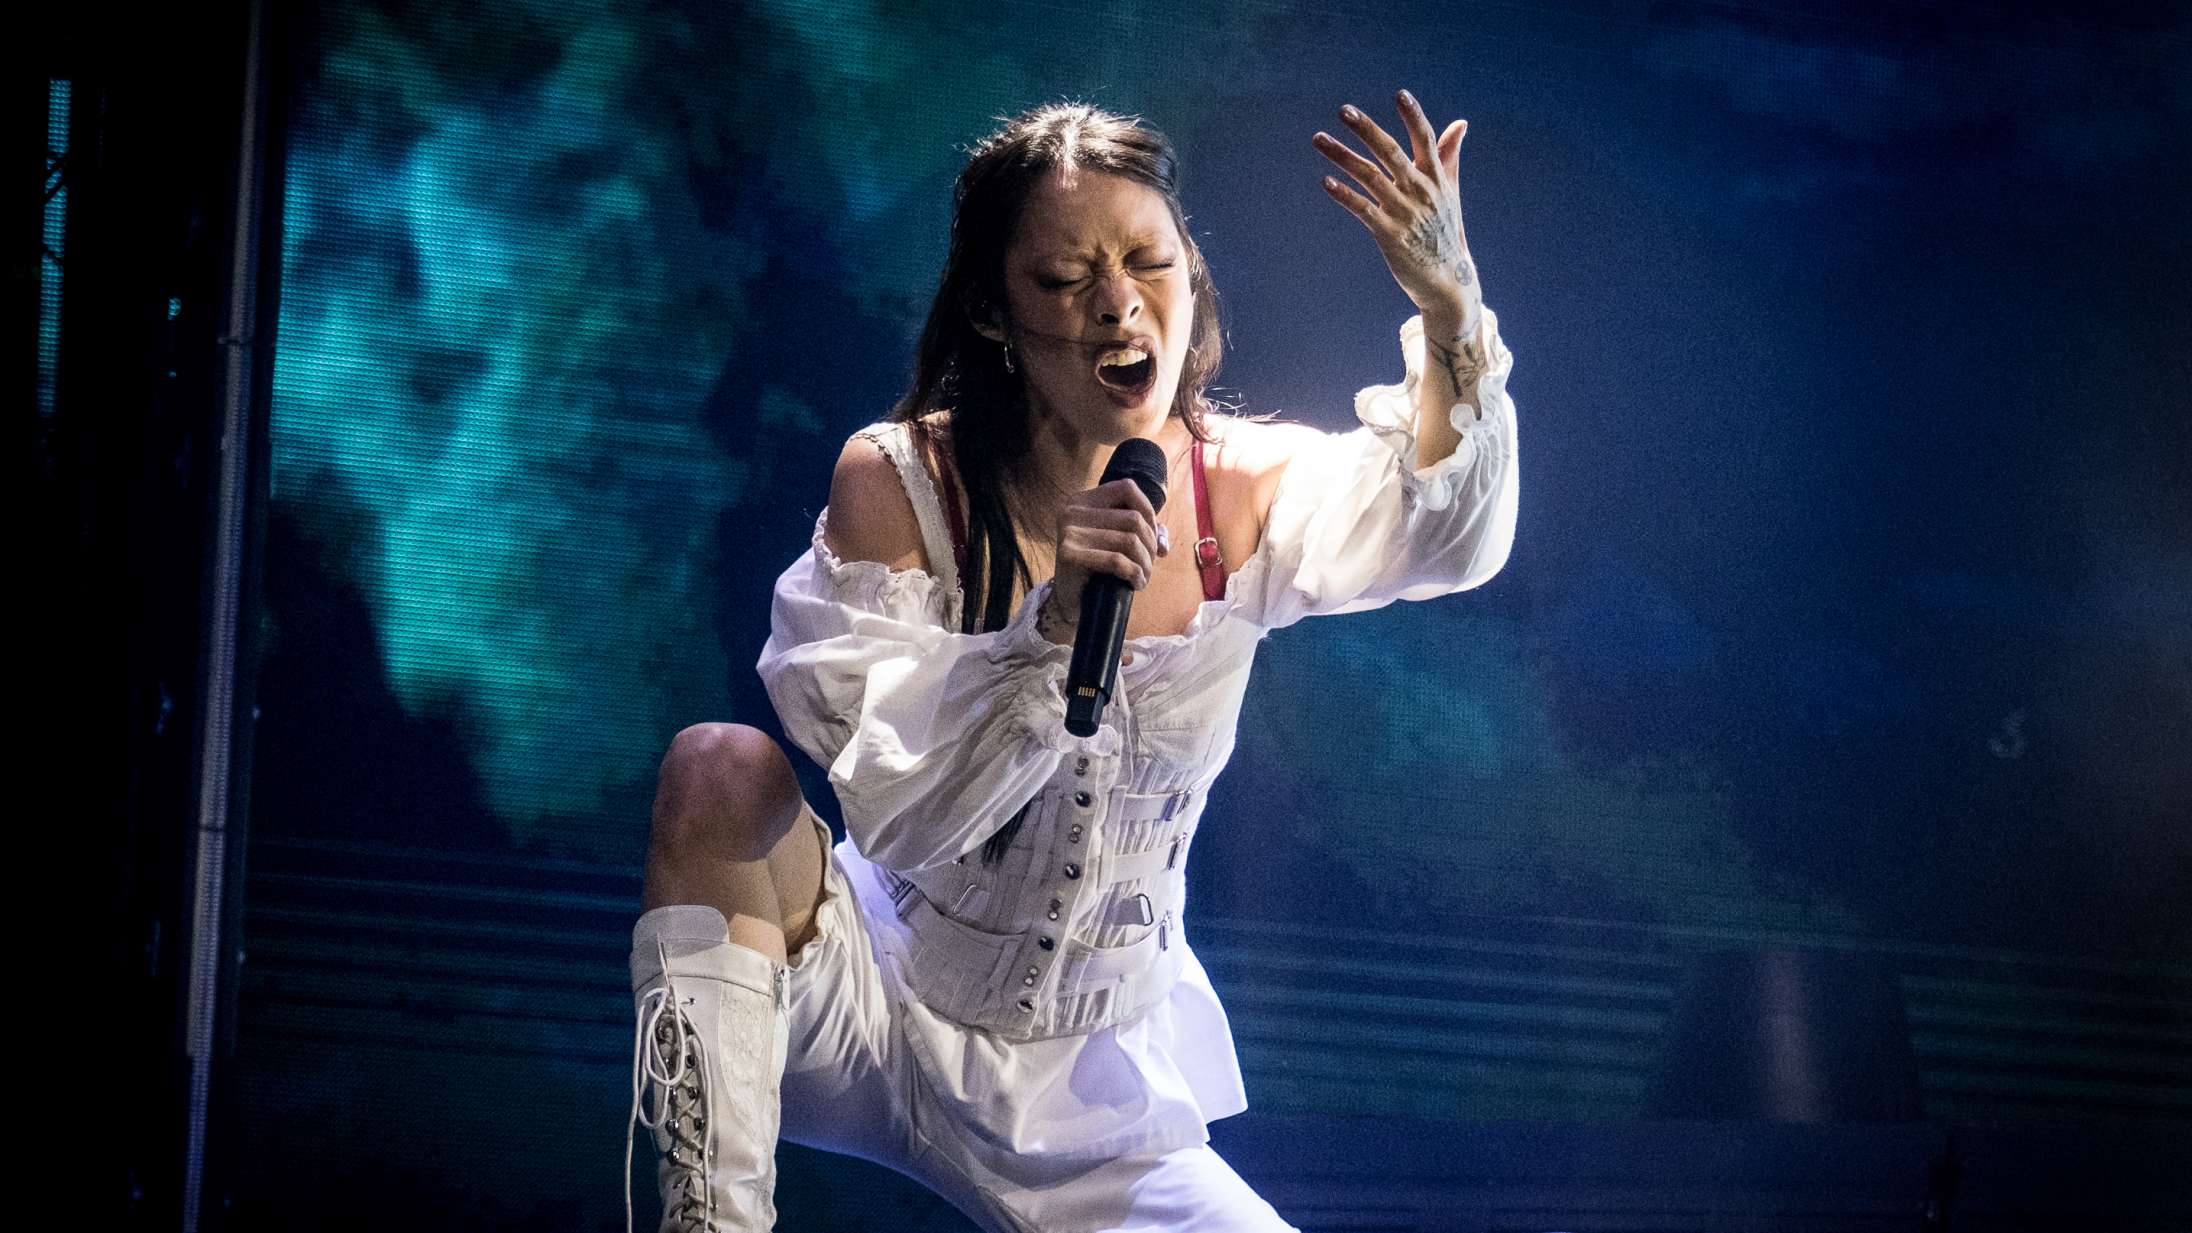 Sidste år spillede Rina Sawayama en fantastisk koncert på Roskilde Festival – i år var hun endnu bedre